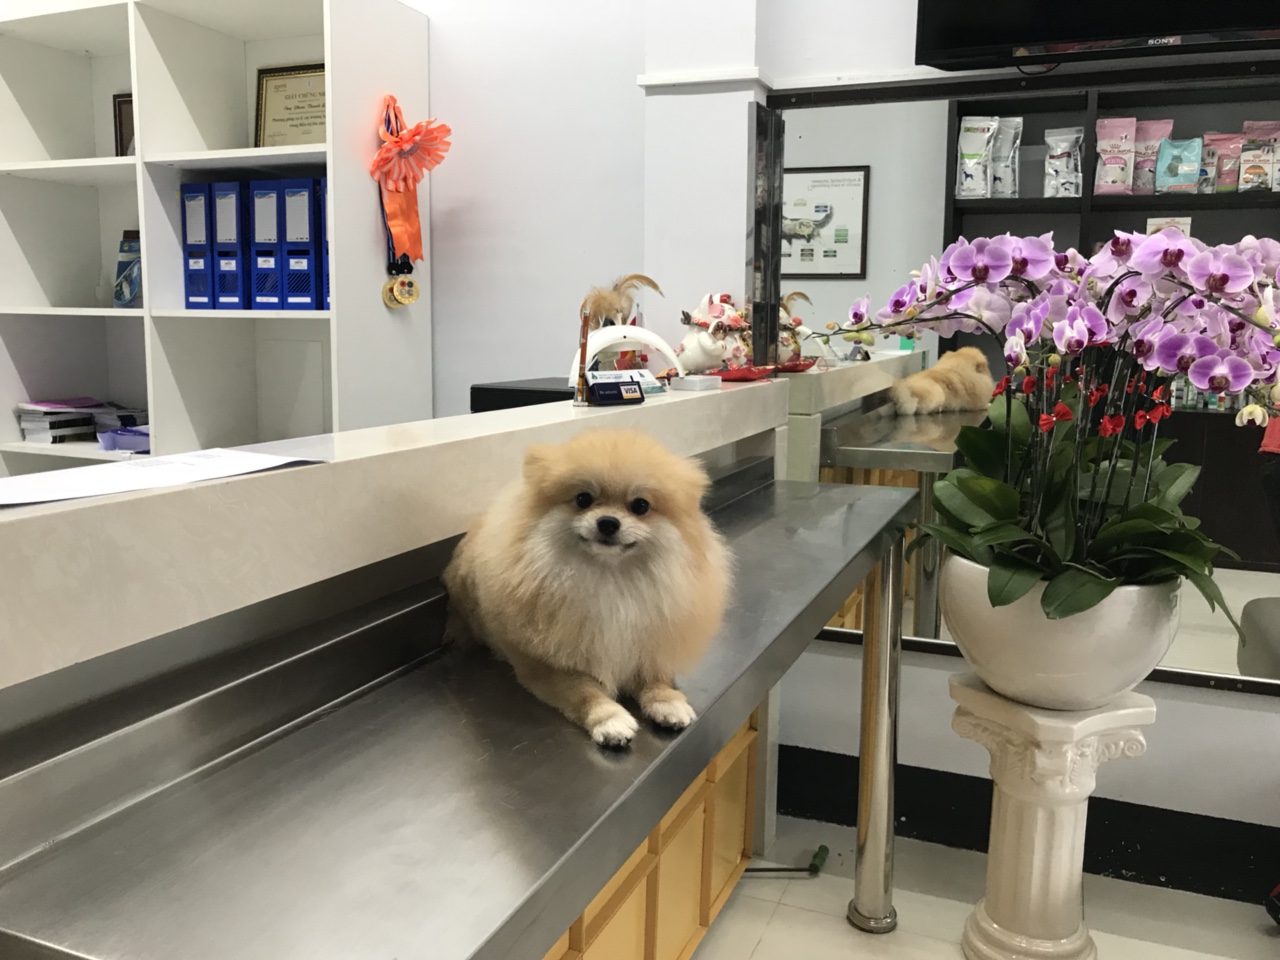 Belwee cơ sở 2 địa chỉ 160 Xô Viết Nghệ Tĩnh, P.21, Q. Bình Thạnh, TpHCM là một trong những phòng khám thú y quận Bình Thạnh có đầy đủ dịch vụ chăm sóc và điều trị bệnh cho thú cưng chuyên nghiệp